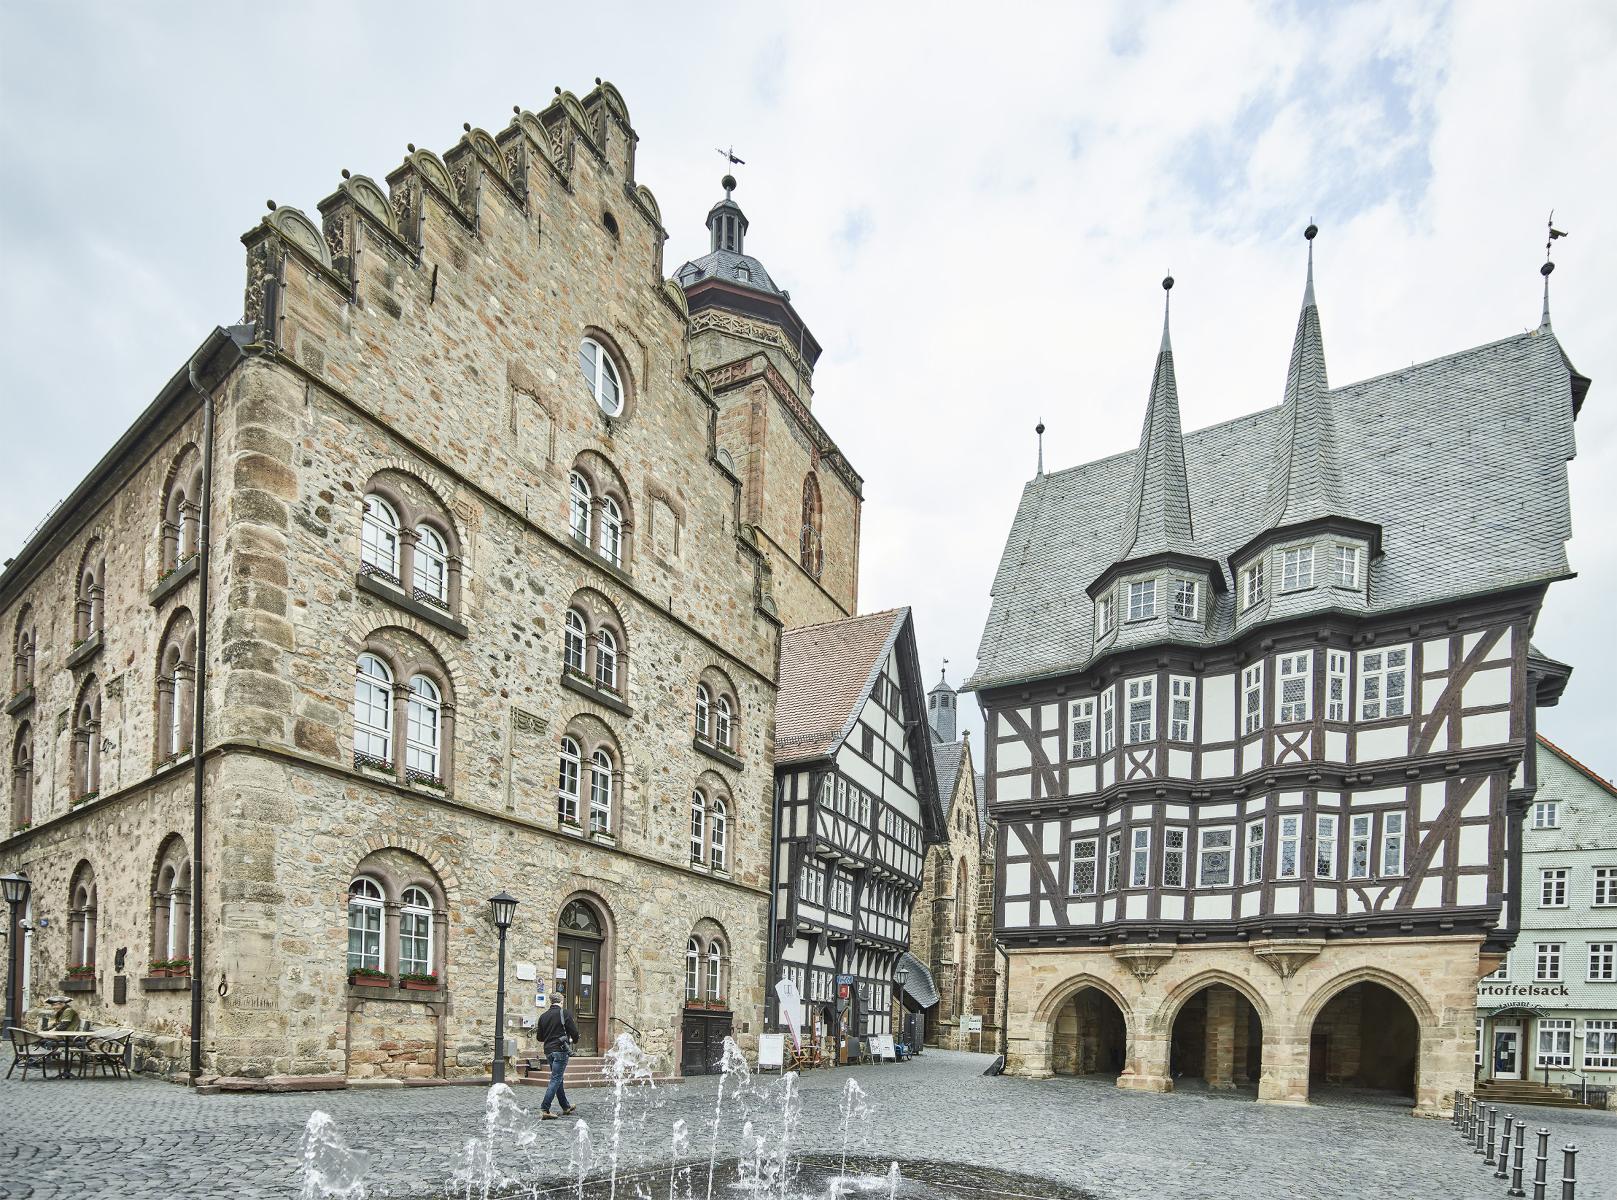 Über 400 Fachwerkhäuser aus sieben Jahrhunderten dominieren das Altstadtbild einer der schönsten Kleinstädte Deutschlands. Idyllische Plätze und verwinkelte Gassen laden ein zum Entdecken, Verweilen und Erleben. Allen voran der Marktplatz mit dem weltbekannten Rathaus. Vielfältige Themen- und ...
                 title=